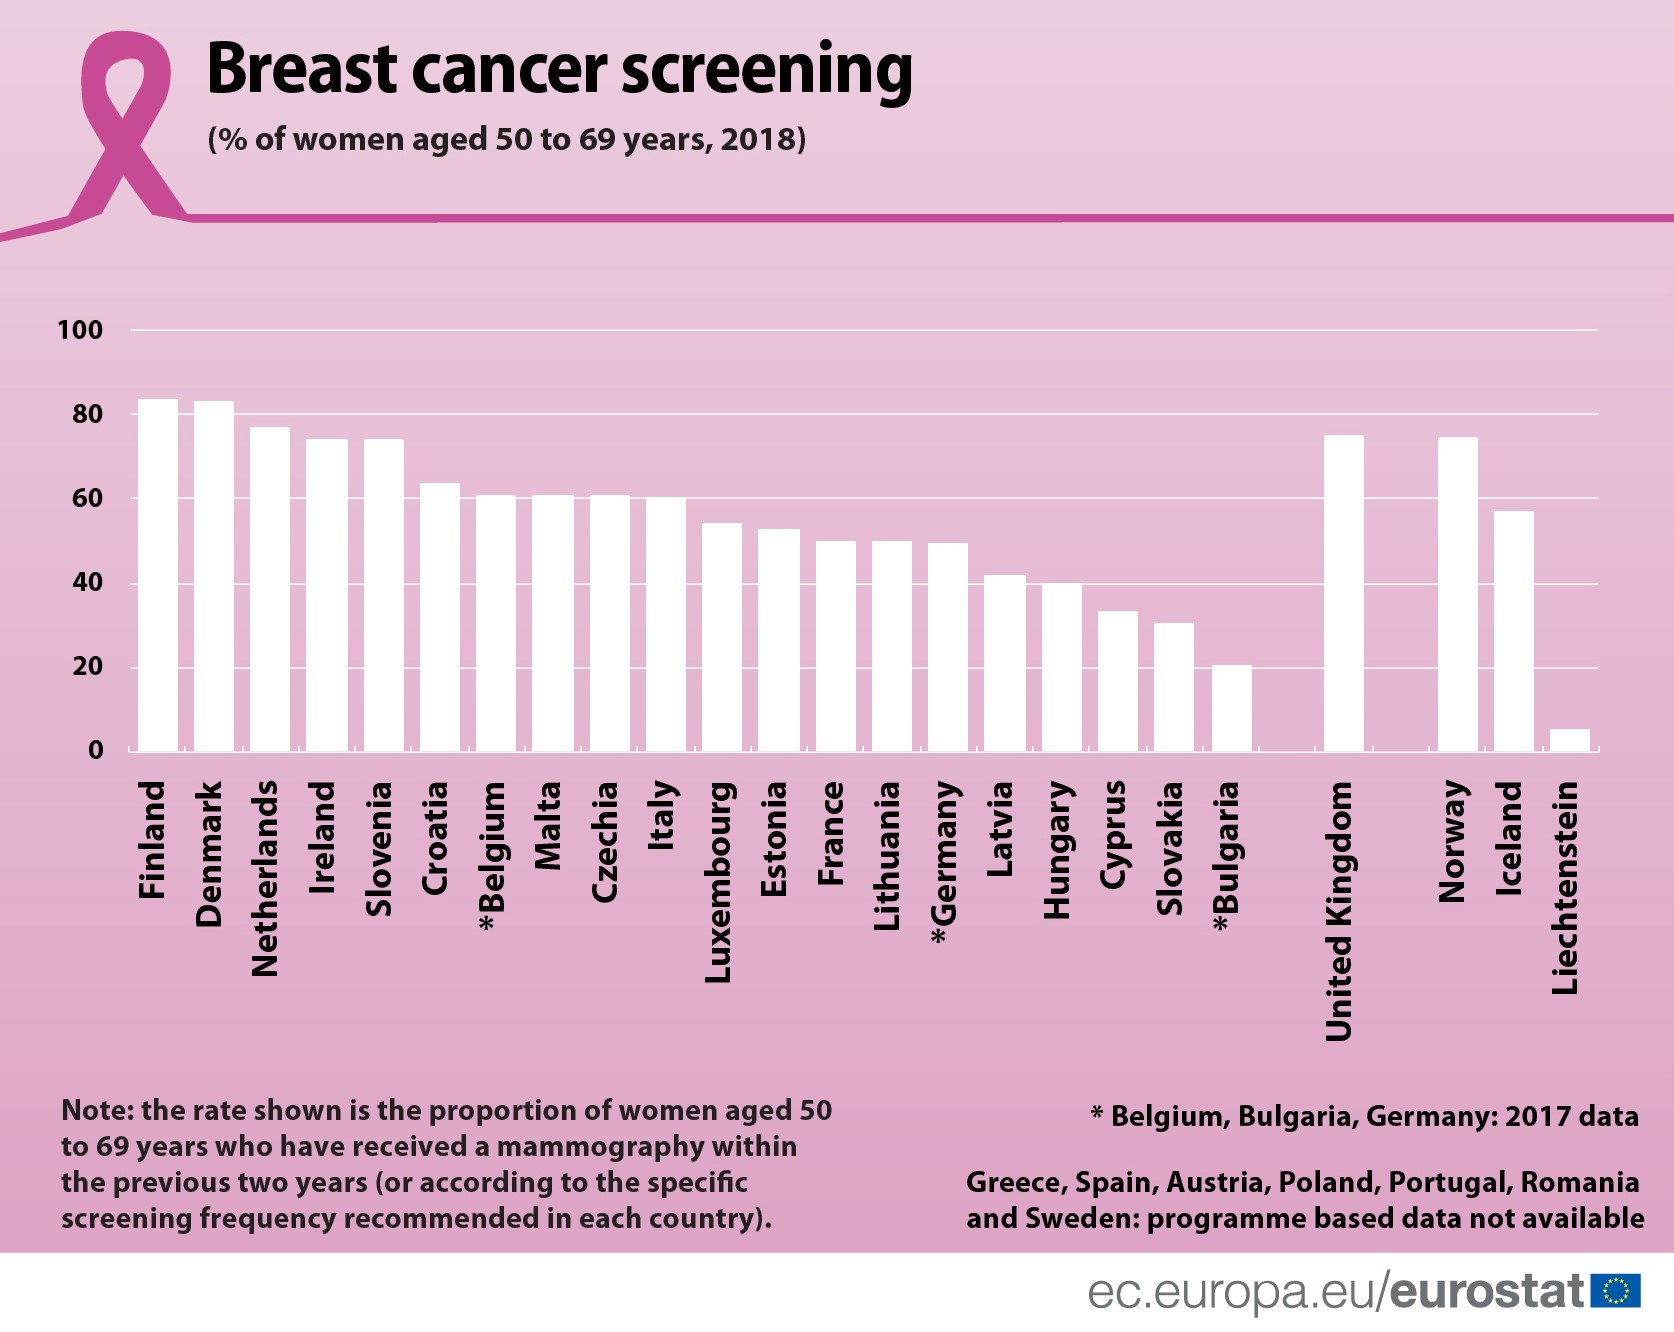 Bugarska beleži najnižu stopu mamografskih pregleda u EU, a Srbija duplo manju od nje 2